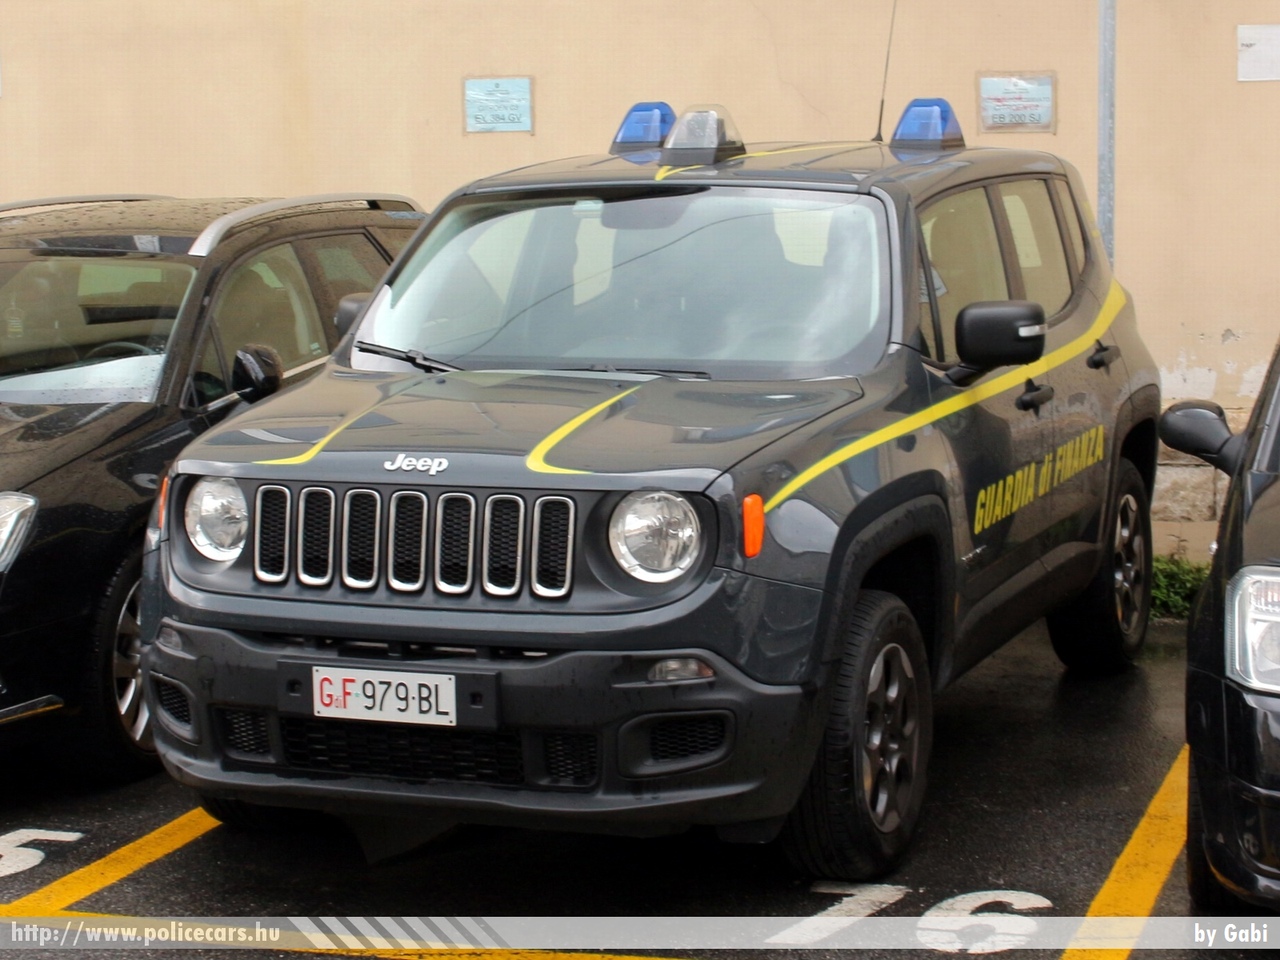 Jeep Renegade, fotó: Gabi
Keywords: olasz Olaszország italian Italy vám customs pénzügyőrség